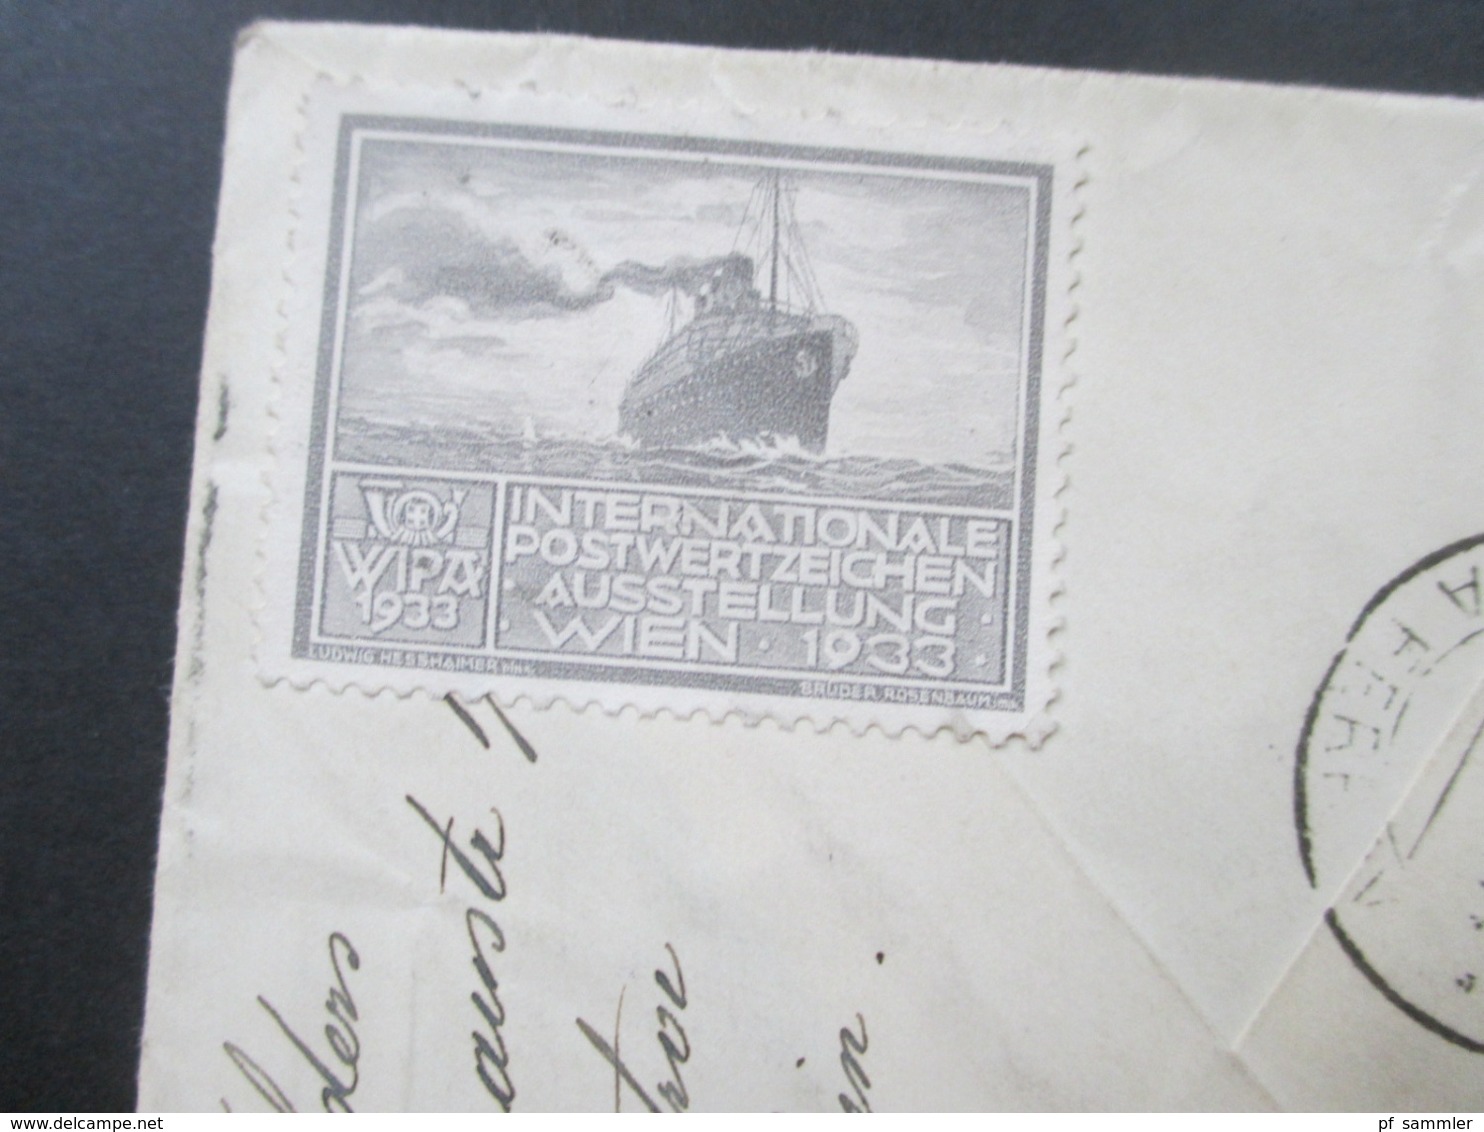 Niederlandisch Indie 1933 Luftpost von Medan über Rom nach Prag rückseitig 3 Vignetten / Reklamemarken Wipa 1933